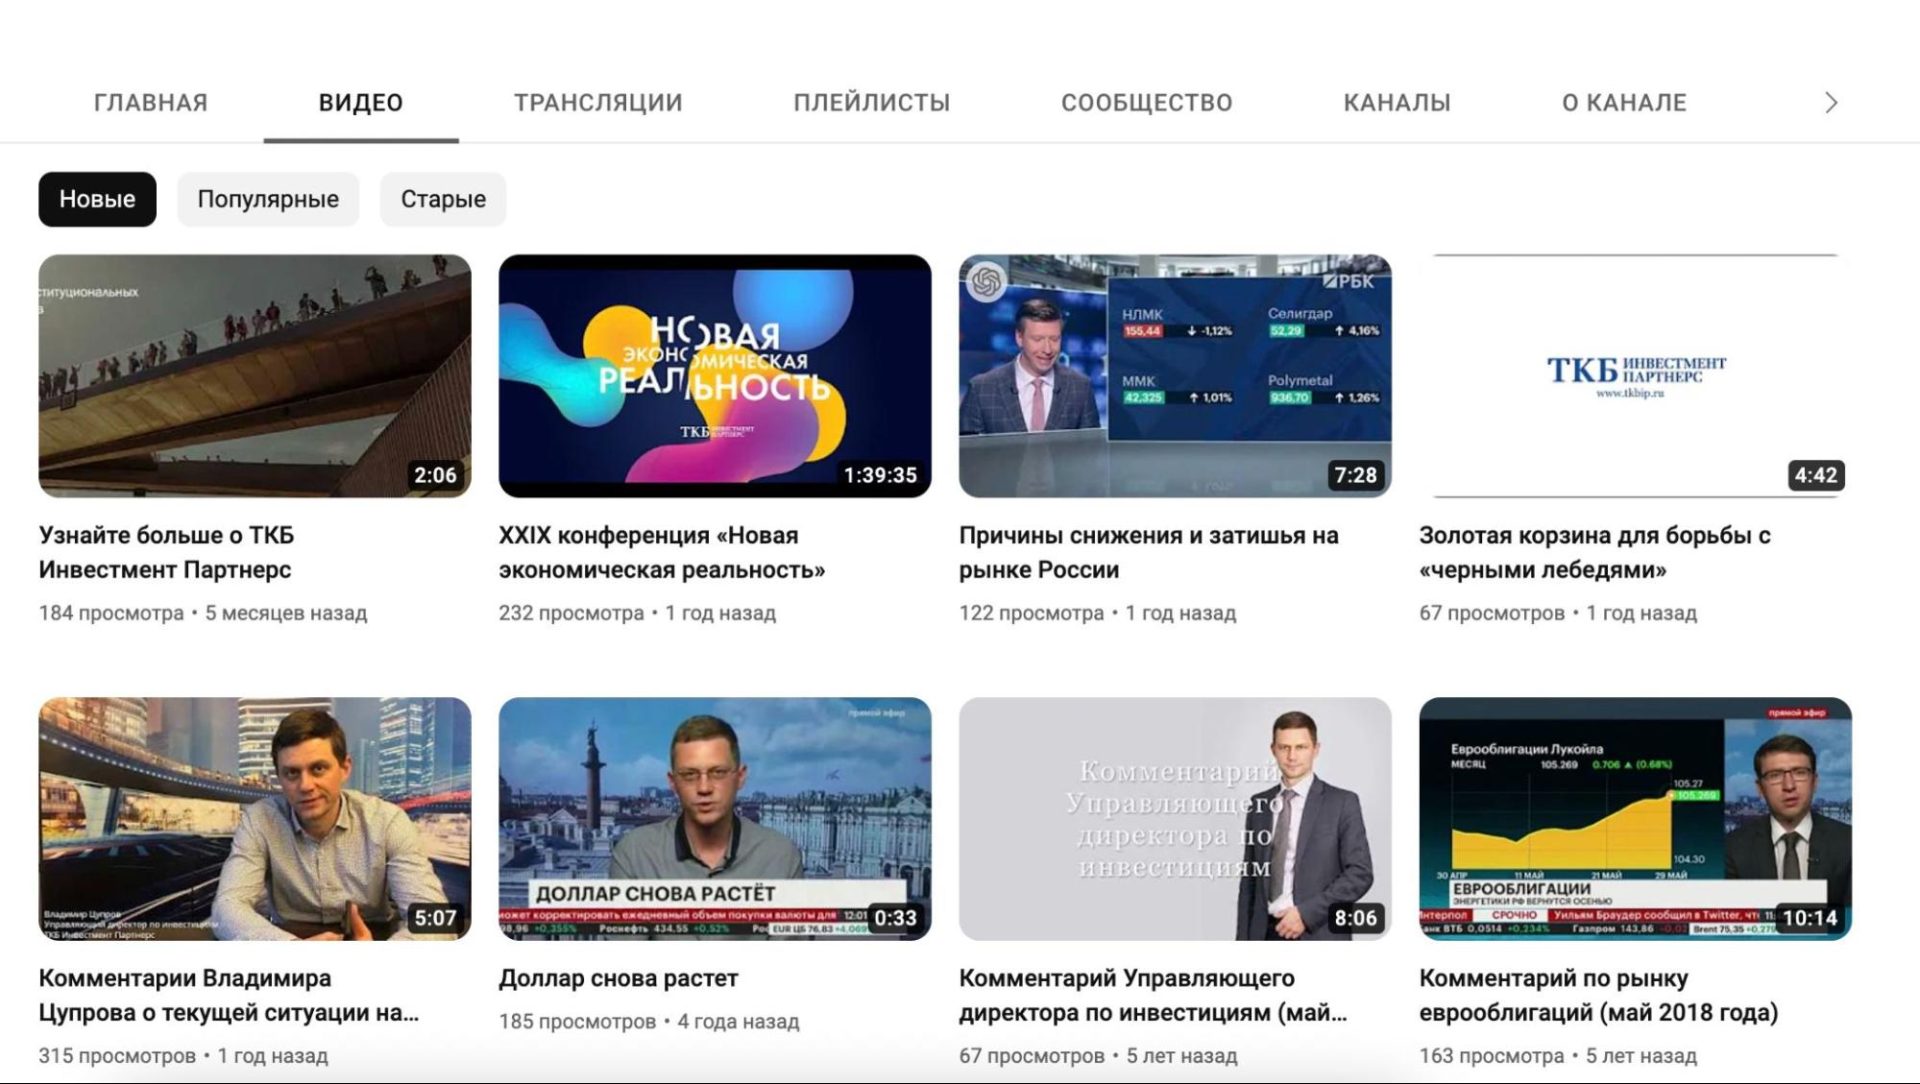 Ютуб-канал ТКБИП 